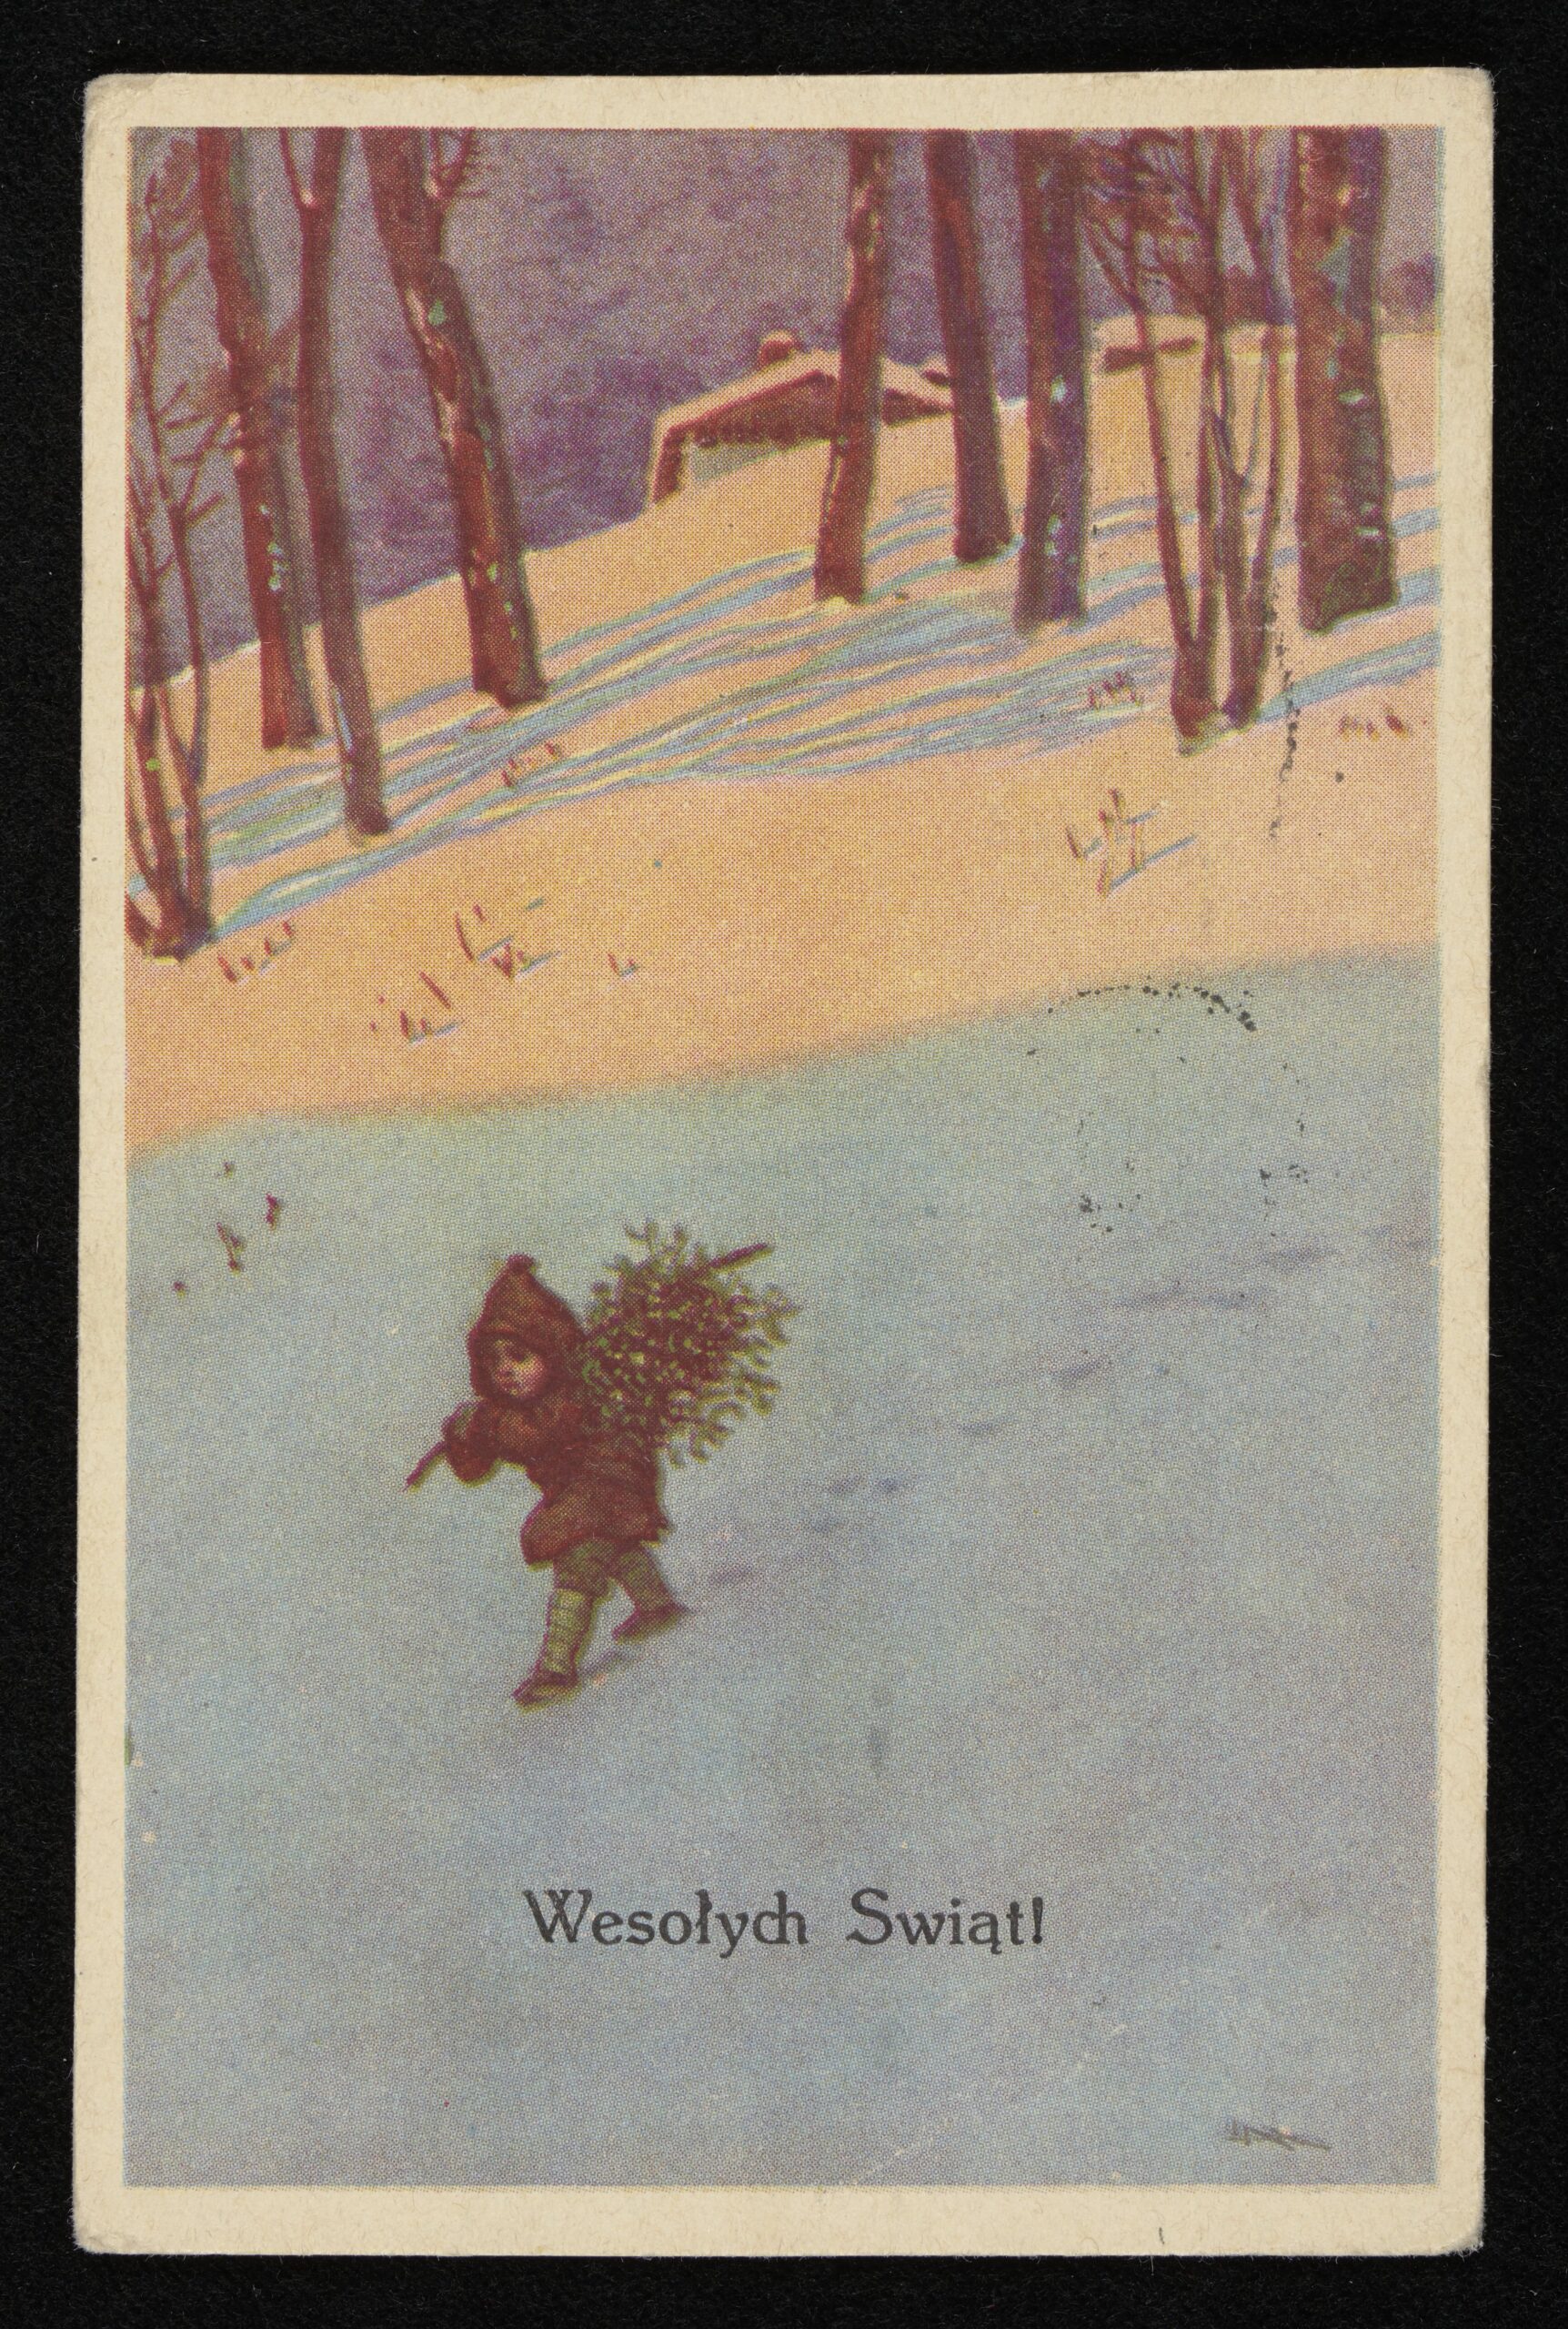 Mały chłopiec niesie przez zimowy las, na plecach małą choinkę. Na dole napis: Wesołych Świąt.